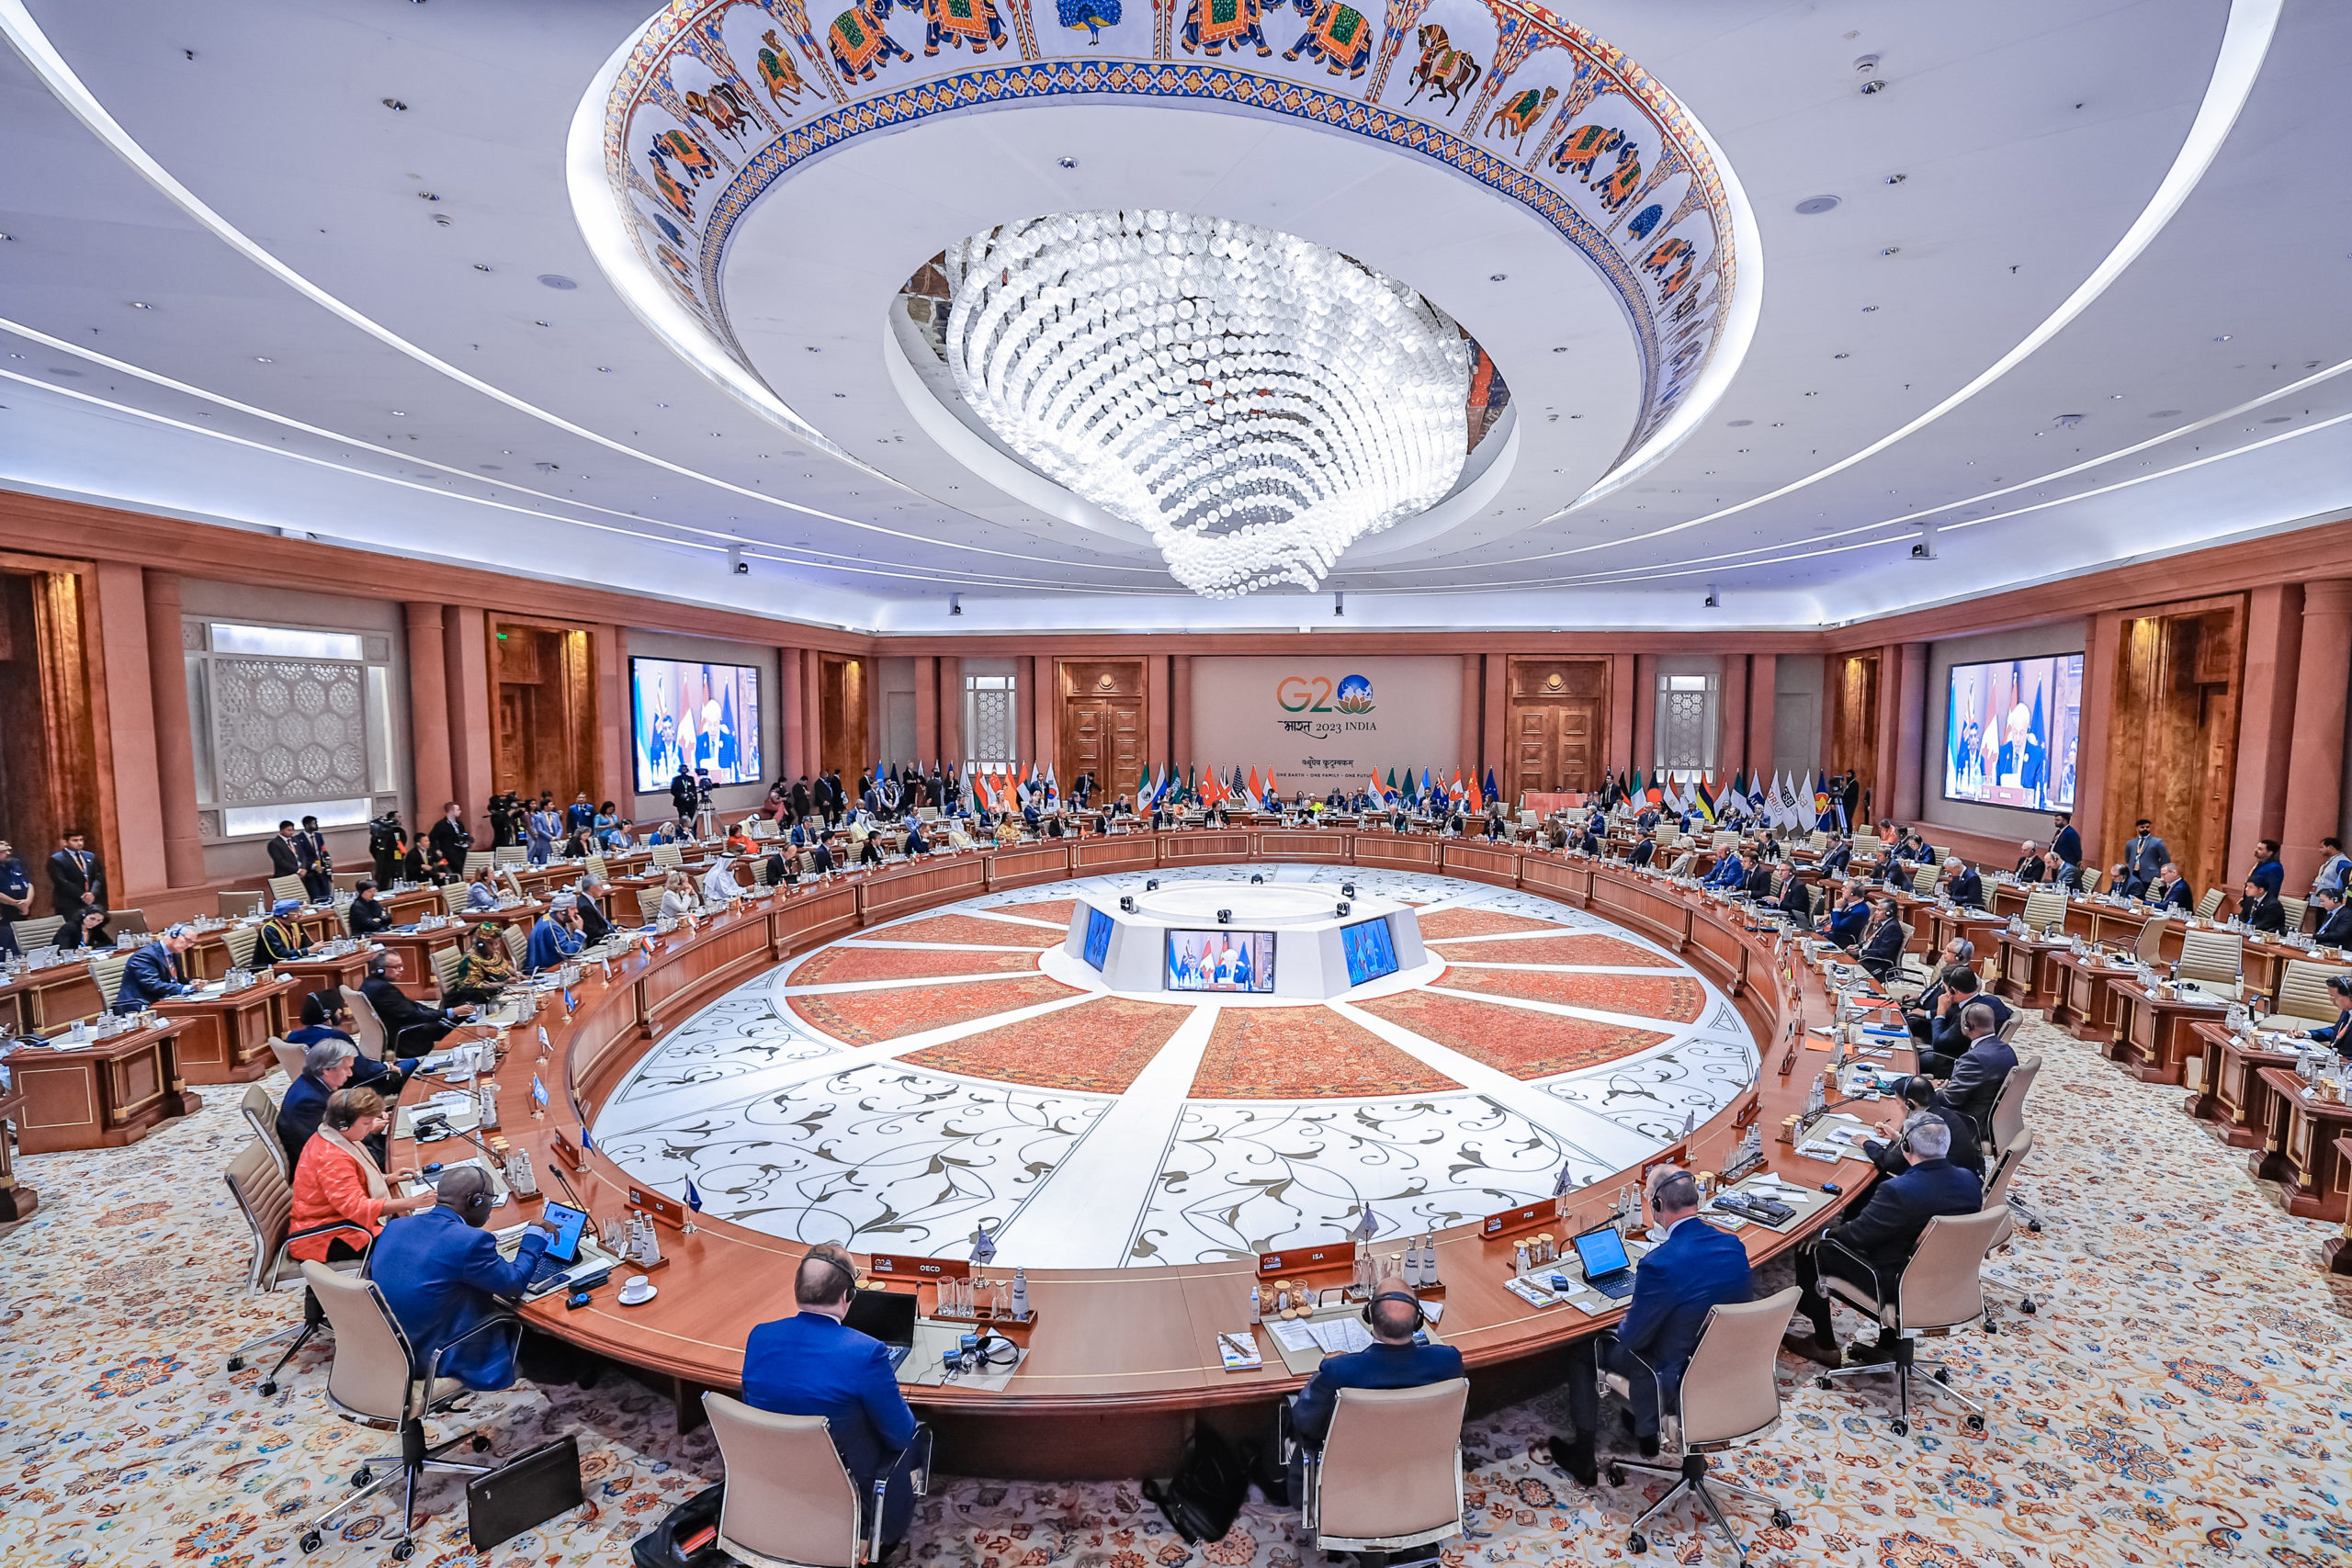 G20 segue sem acordo para combustíveis fósseis e distante Acordo de Paris. Na imagem: Grande mesa circular de madeira com chefes de estado globais, assentados ao redor, durante a Cúpula do G20 – Sessão III: “Um Futuro”, em Nova Delhi, na Índia (Foto: Ricardo Stuckert/PR)